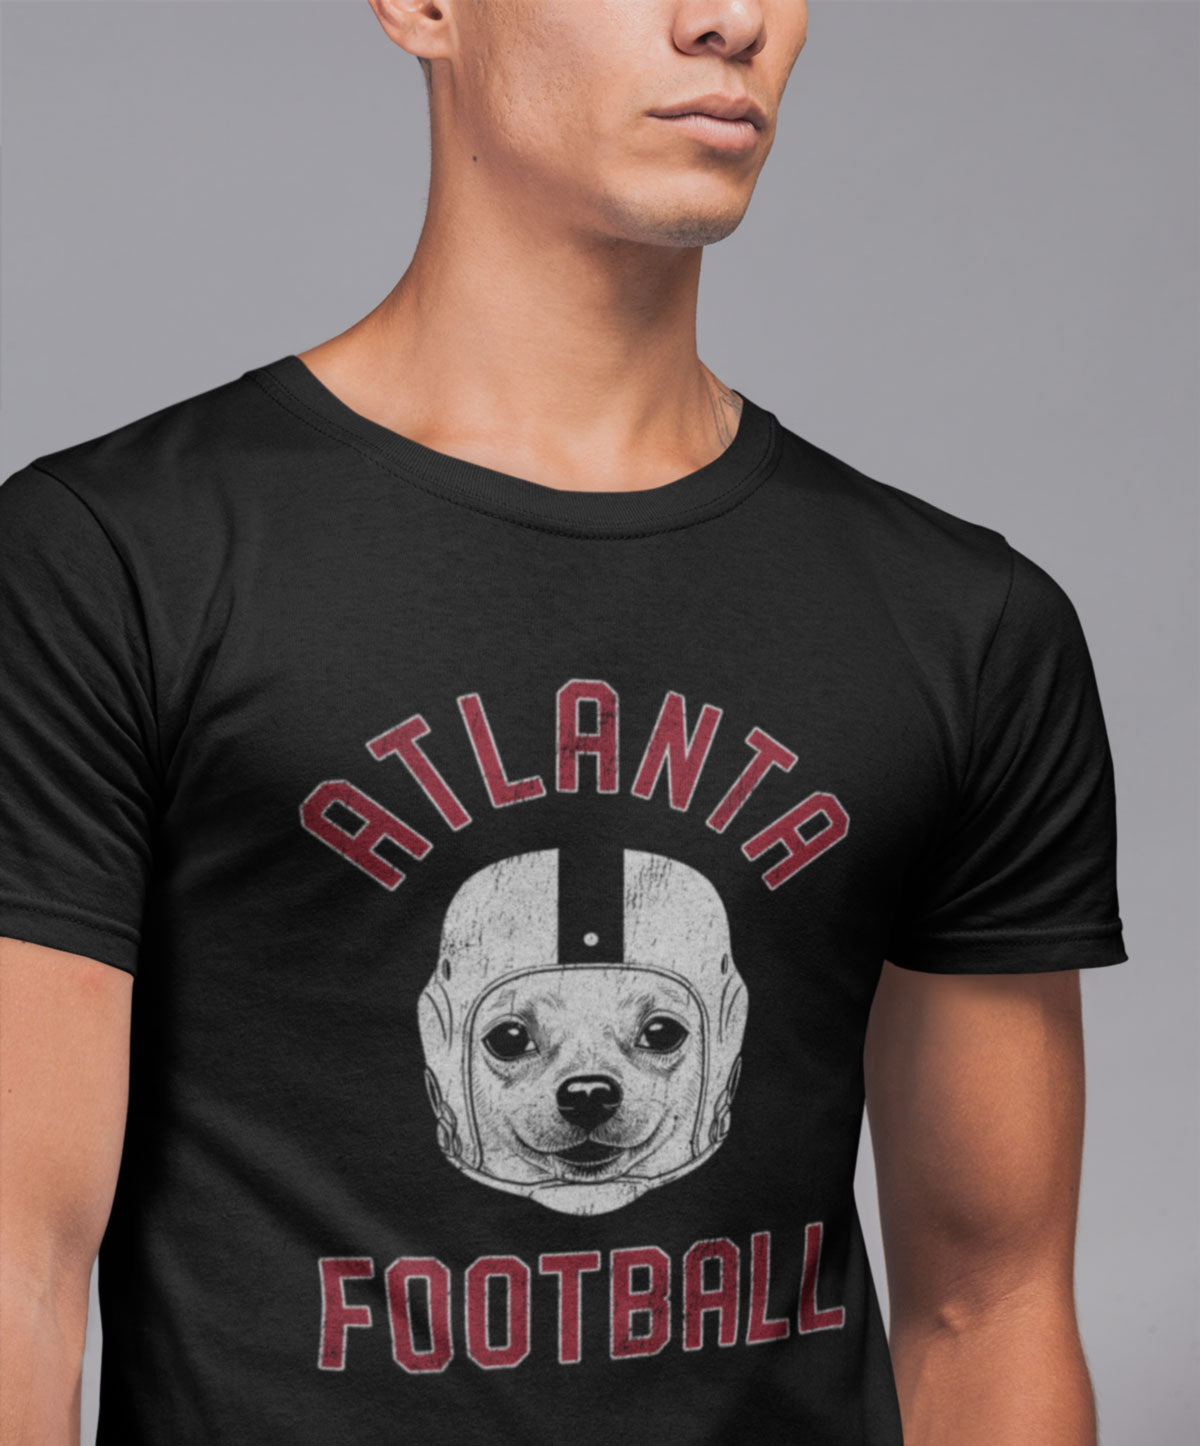 Atlanta Football Chihuahua T-Shirt